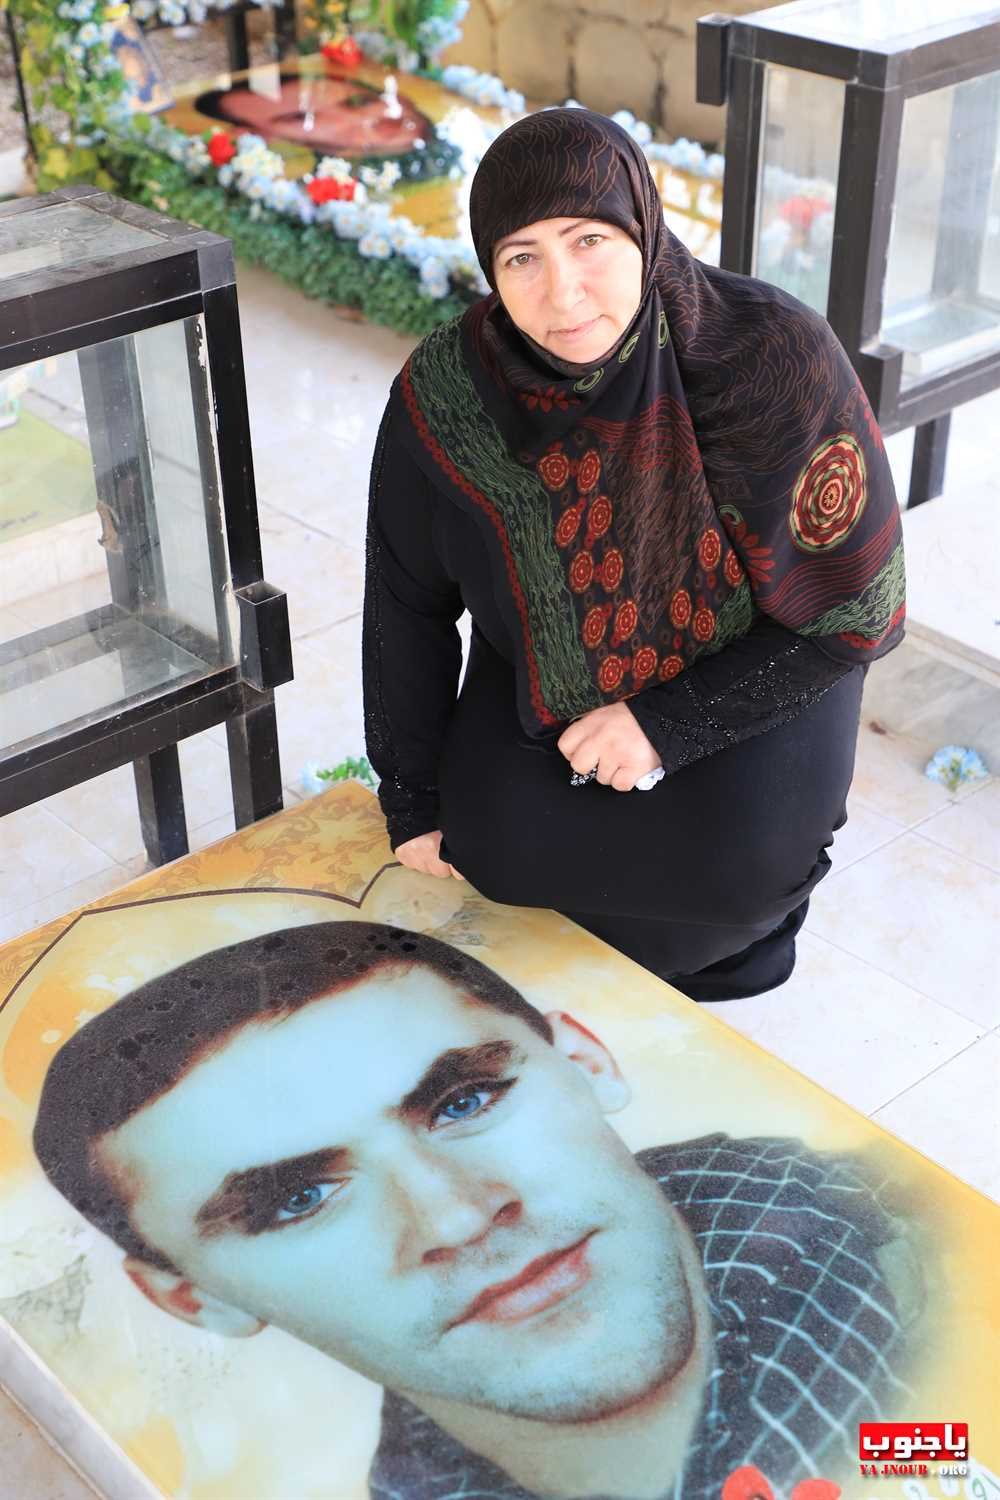 ذكرى ثالث المرحوم الحاج محمد حسين مغنية في بلدة طيردبا.      